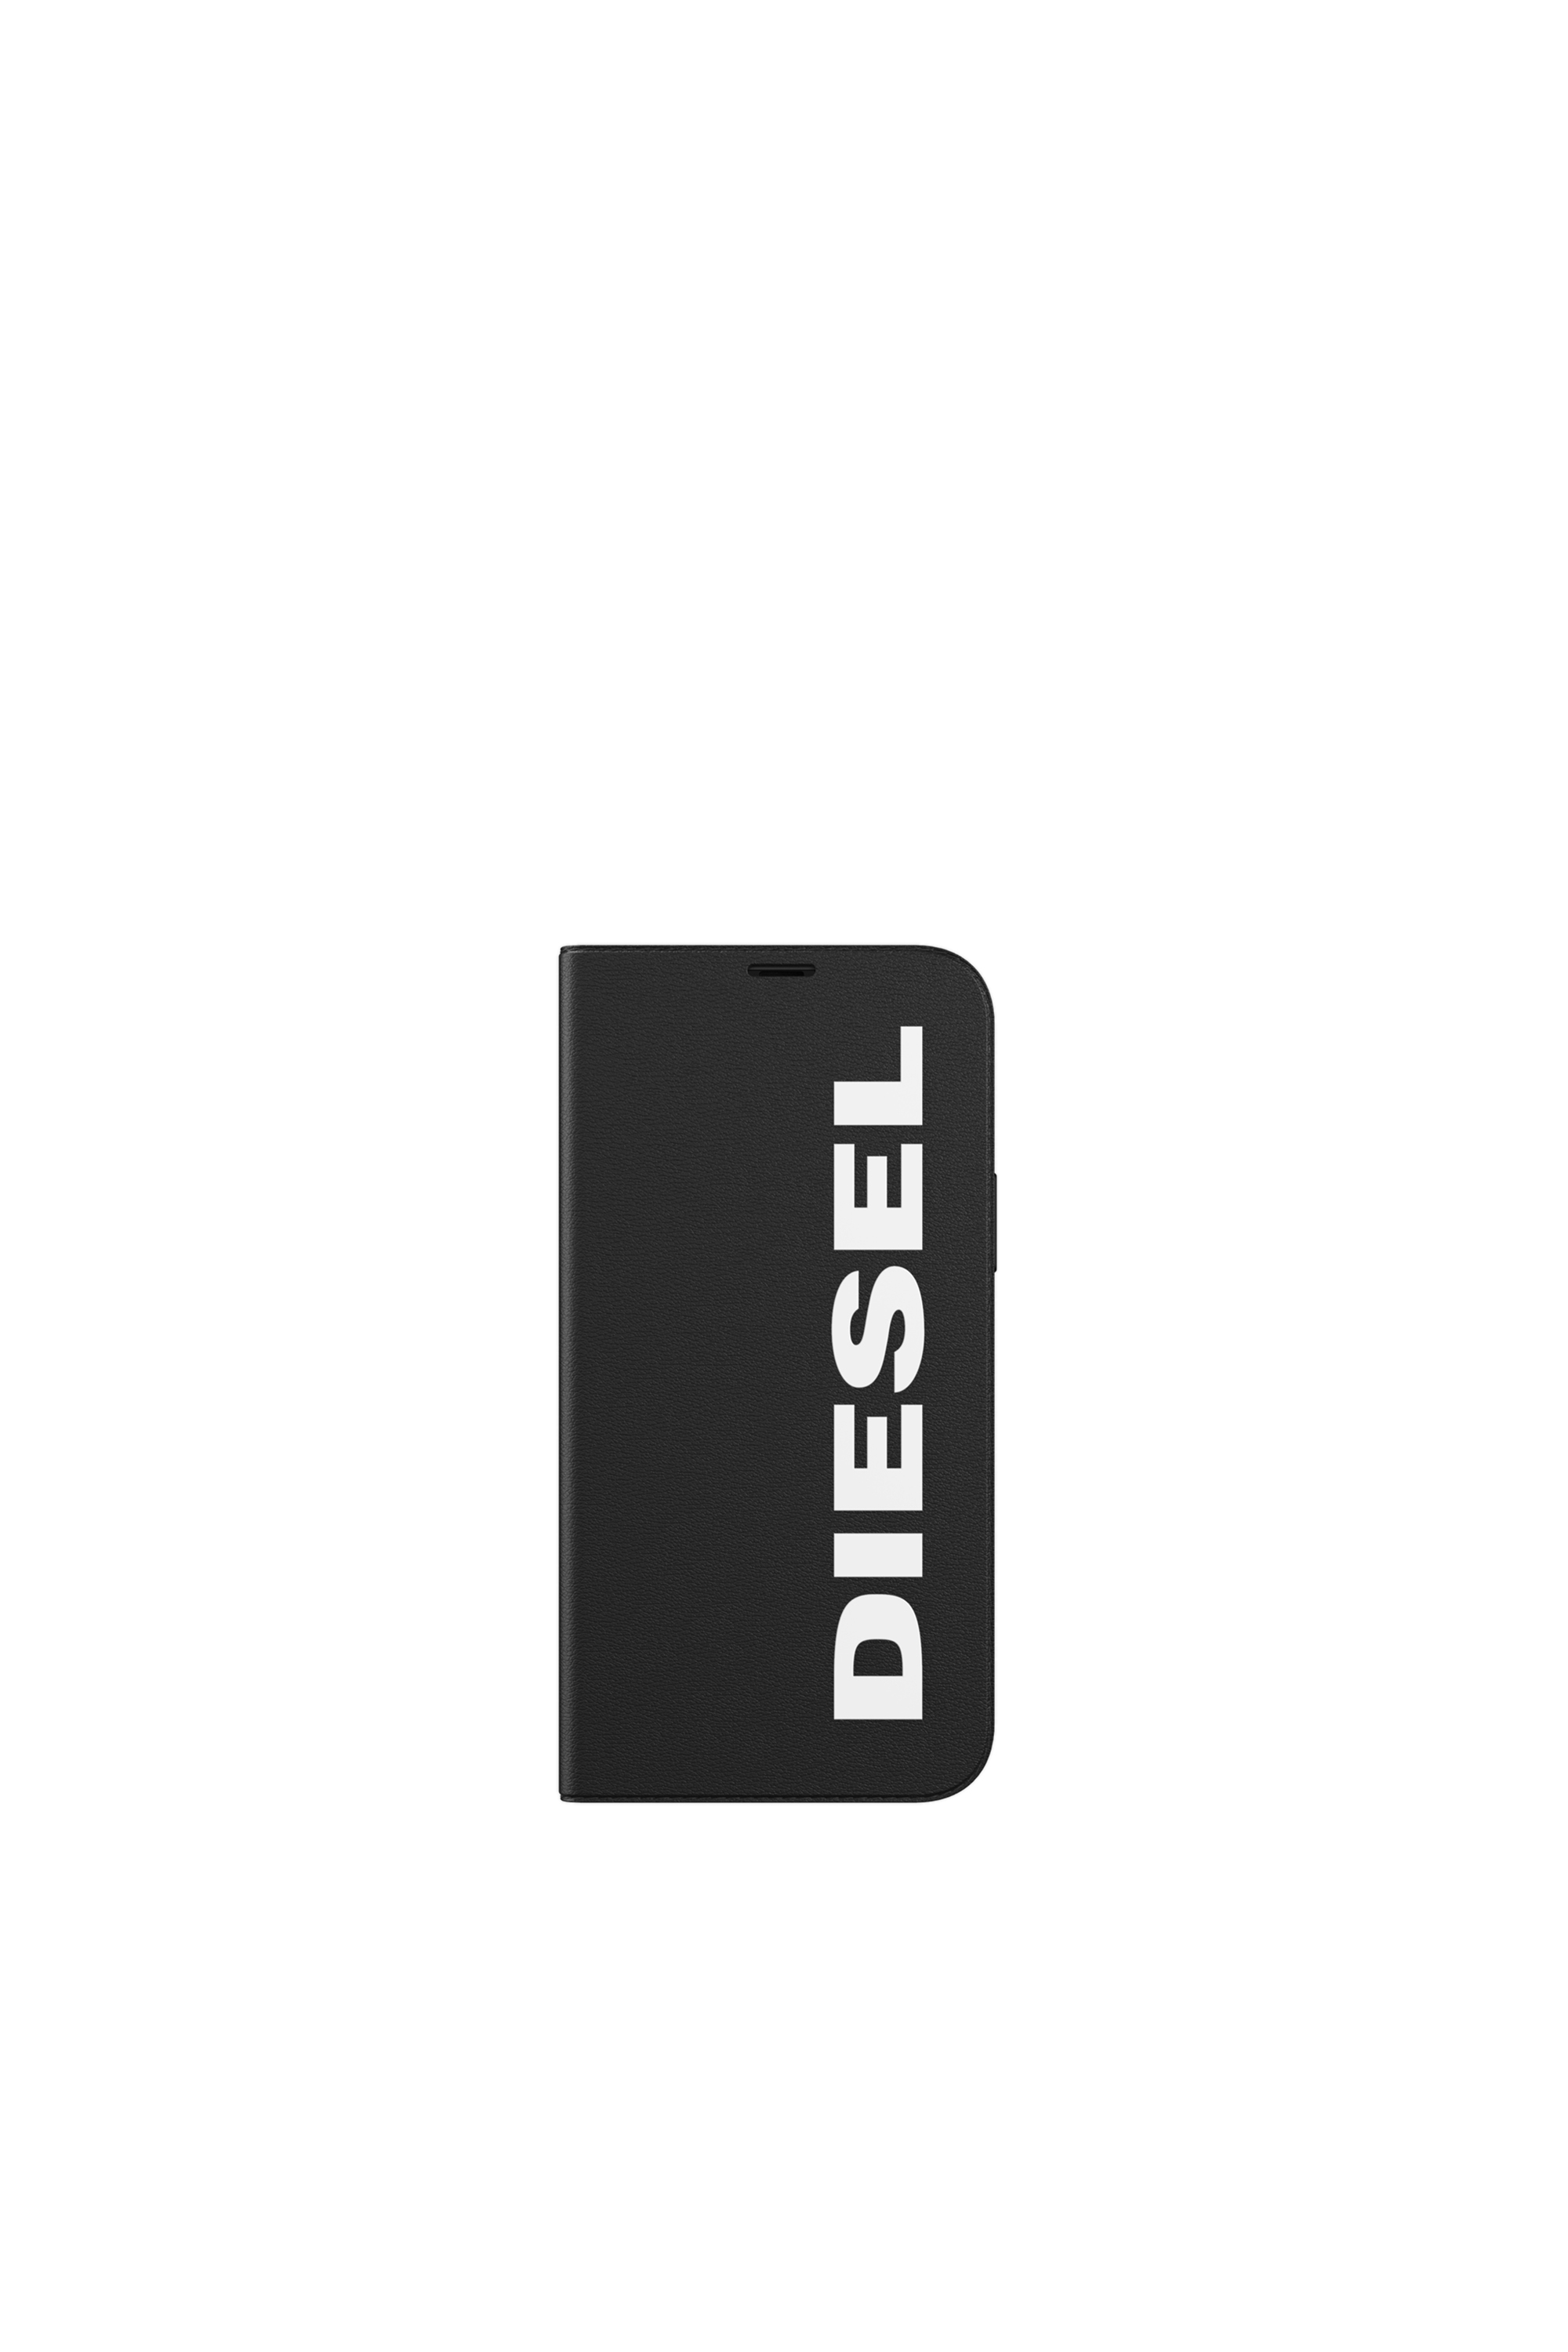 Diesel - 42486, Black - Image 2